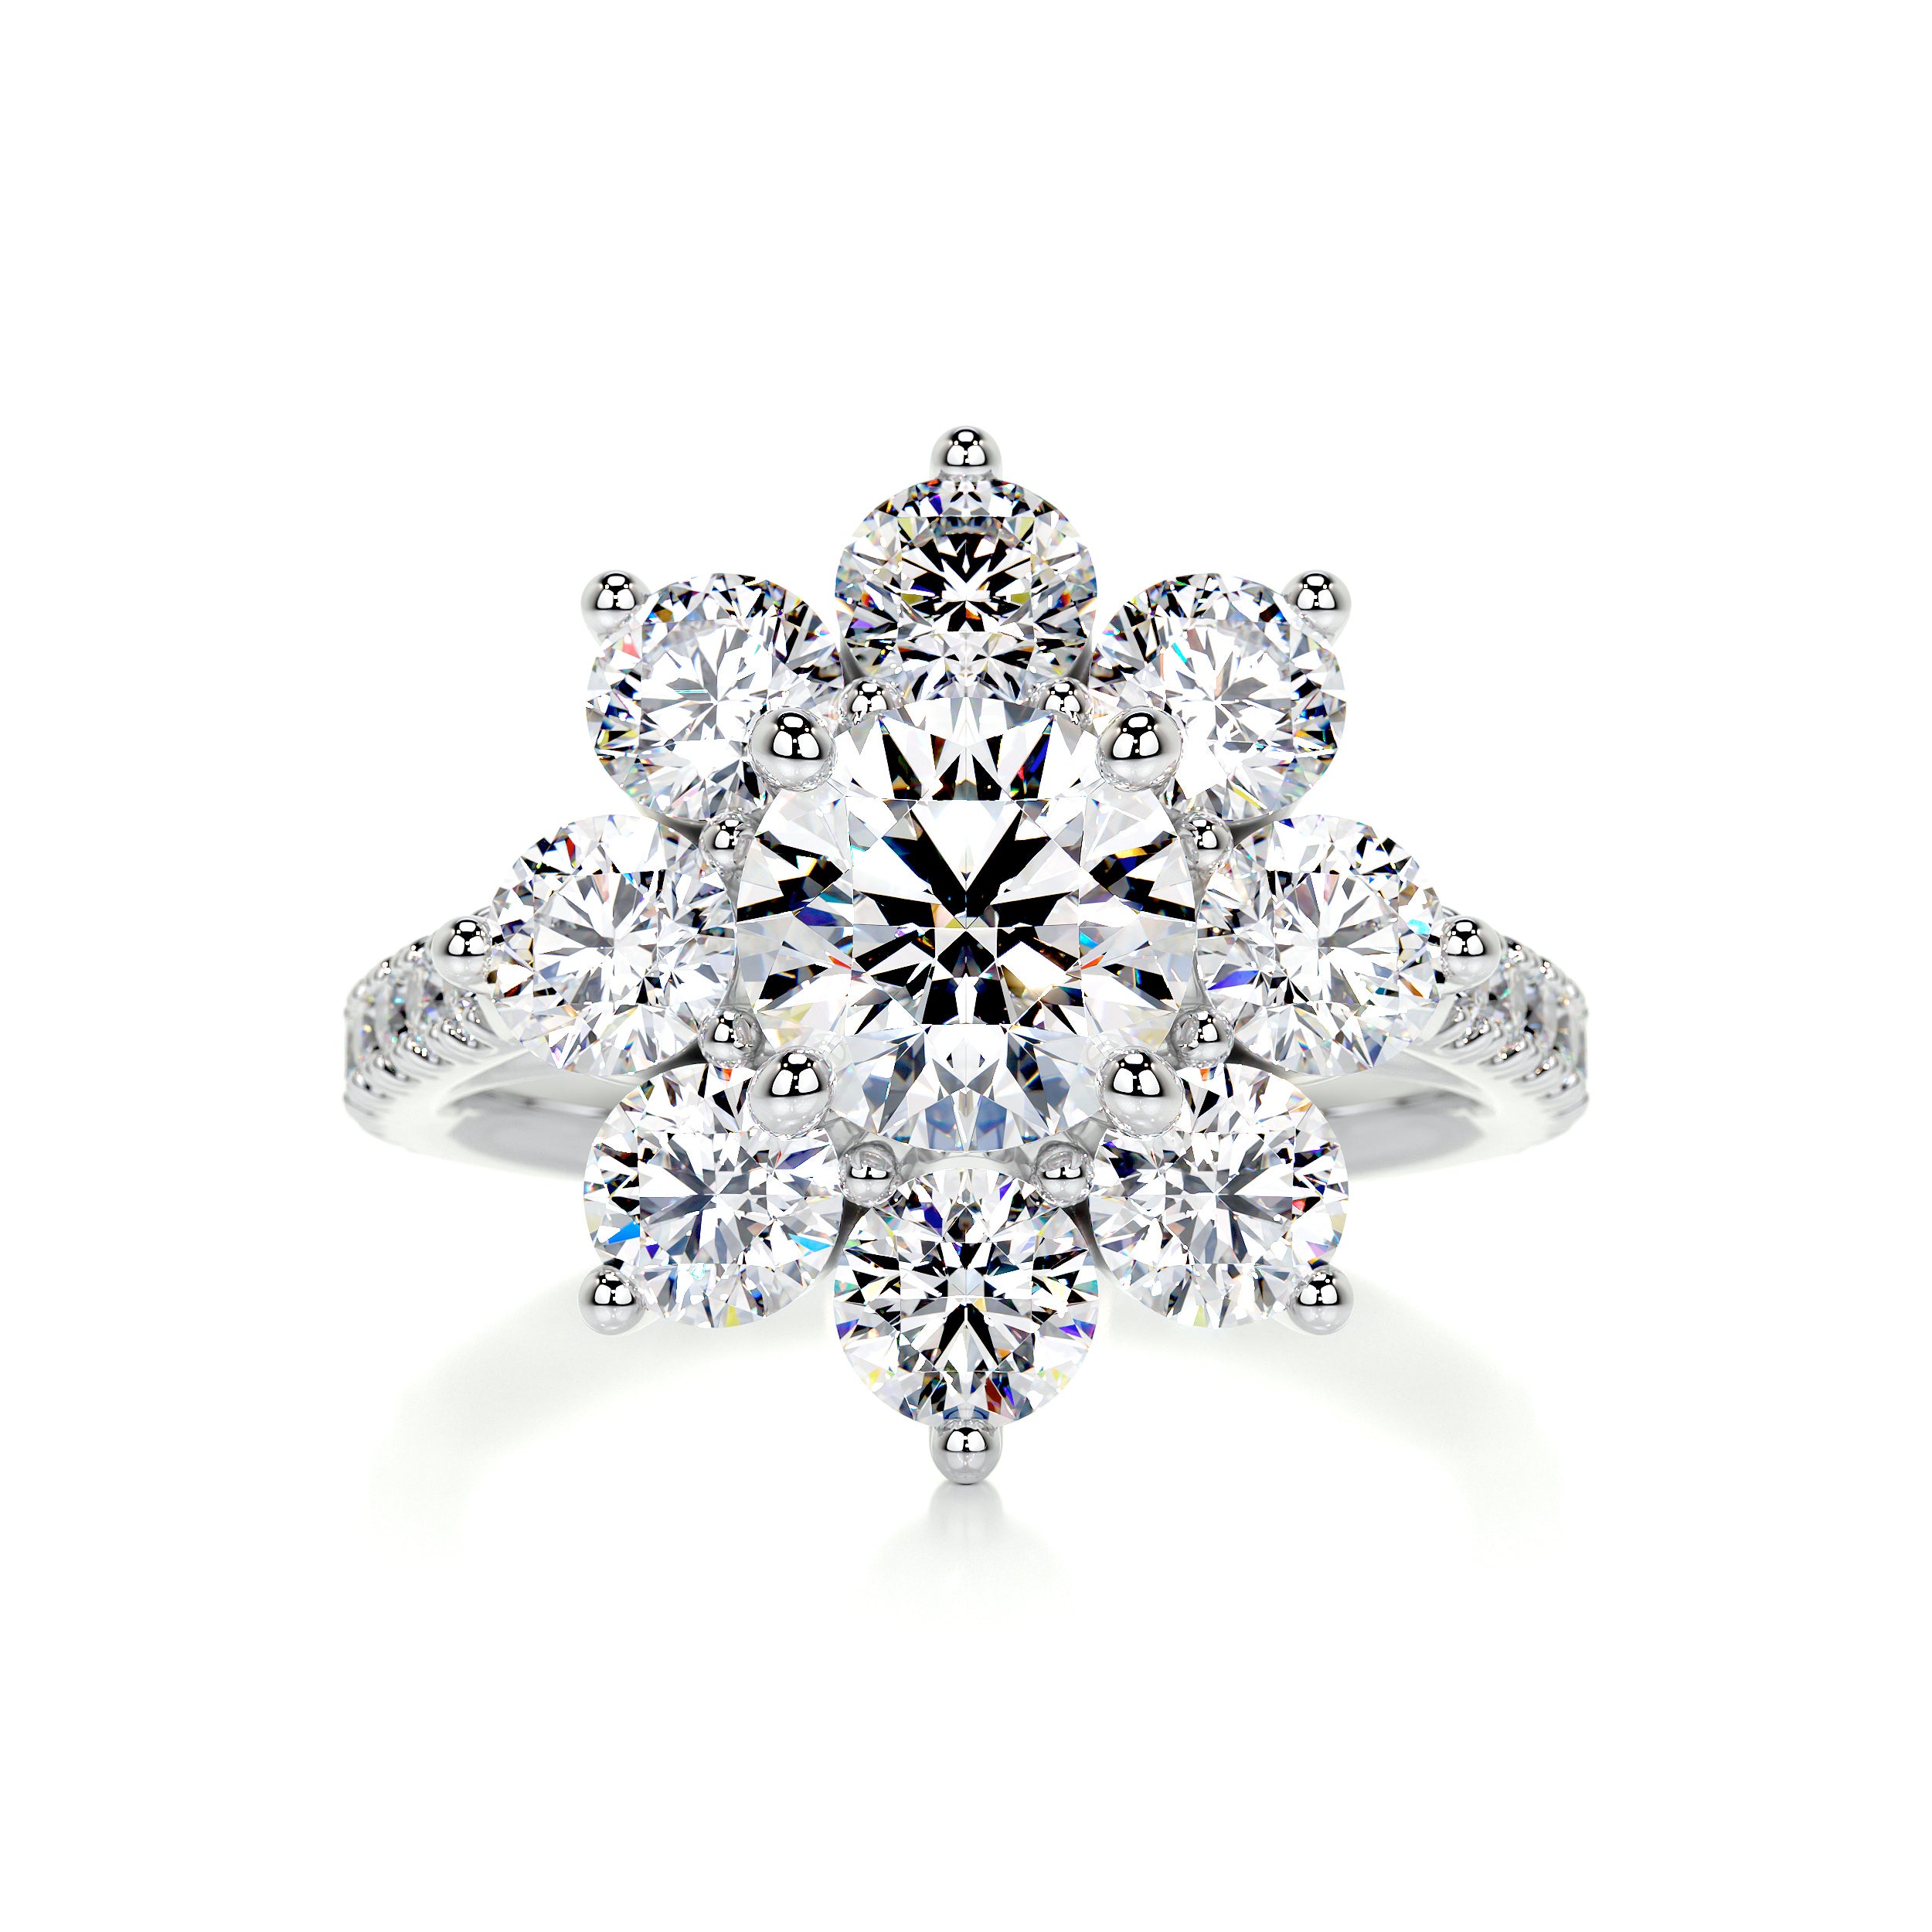 La Fleur Moissanite & Diamonds Ring   (2.5 Carat) -Platinum